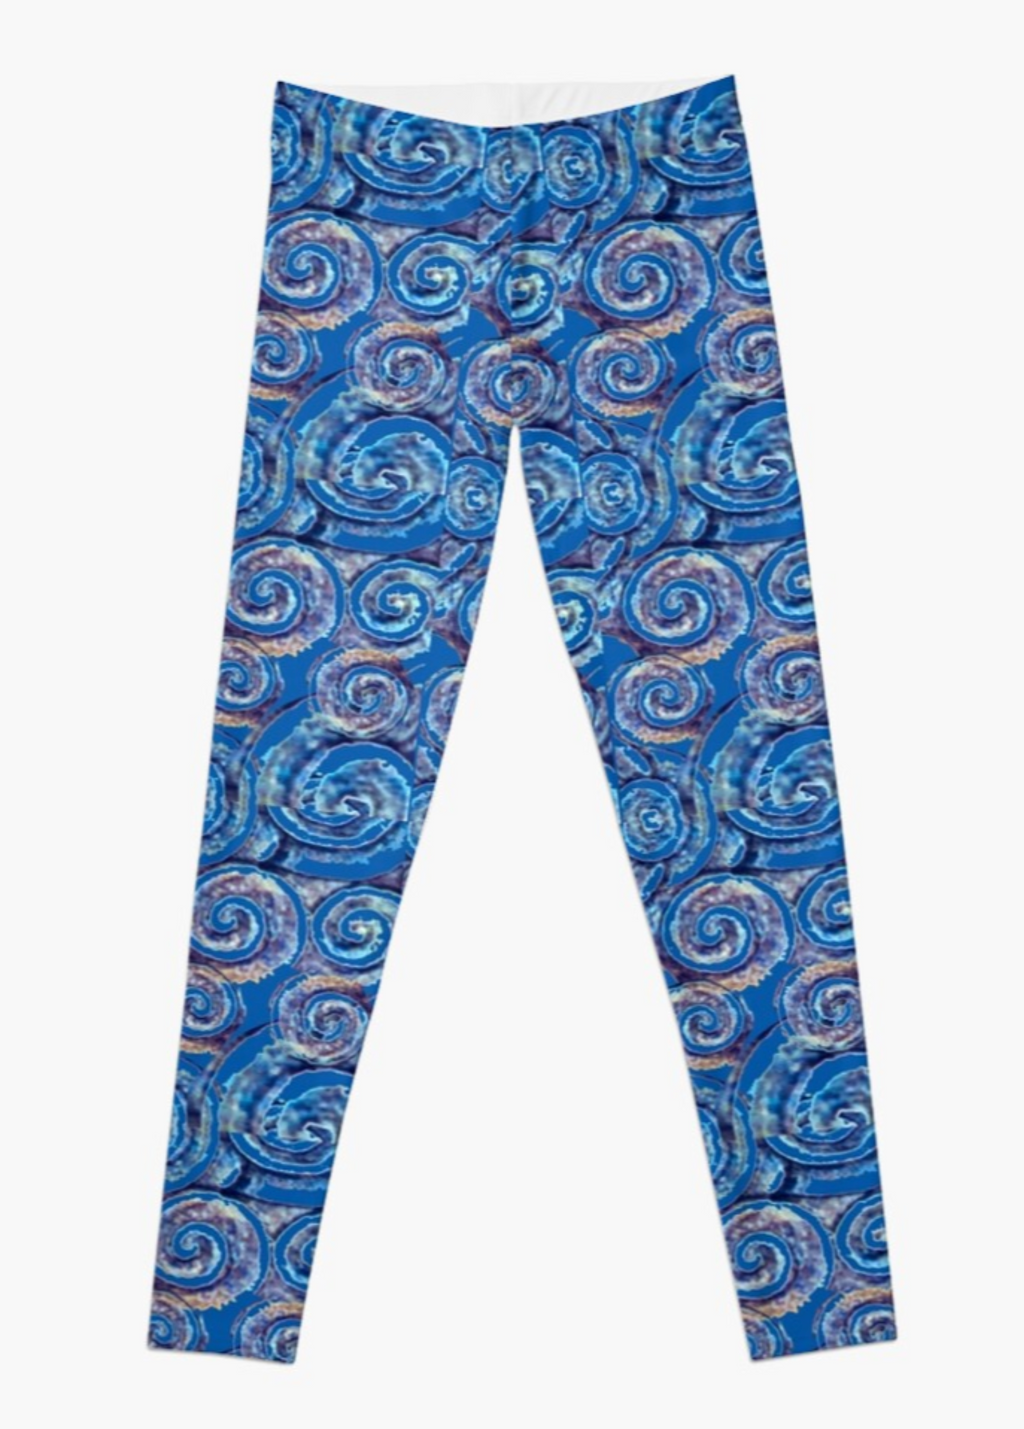 Designer Leggings - Antique Blue Spirals